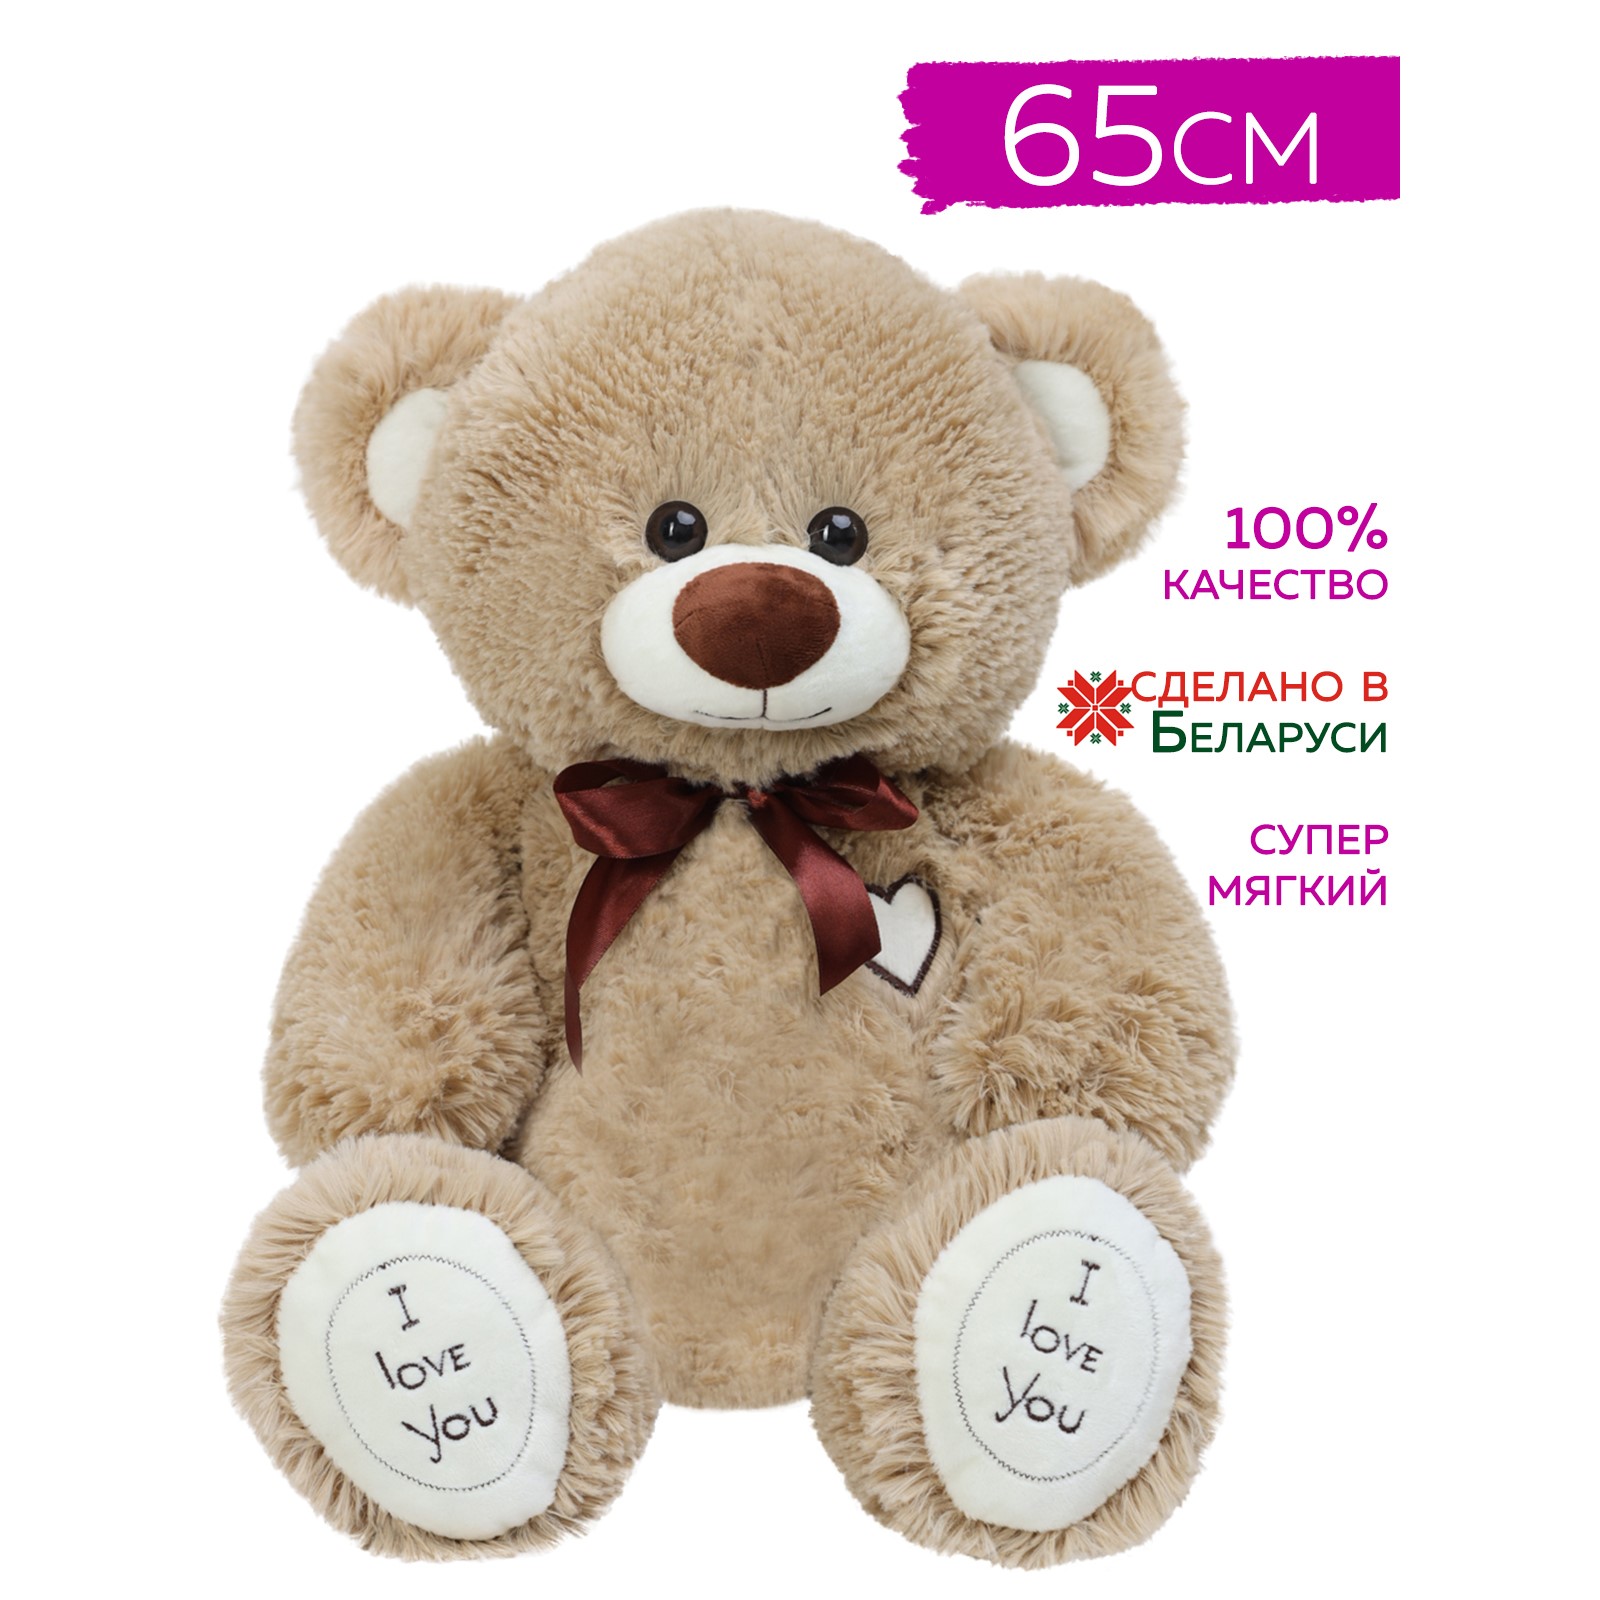 Мягкая игрушка Мягкие игрушки БелайТойс Плюшевый медведь Арчи 65 см цвет кофейный - фото 4